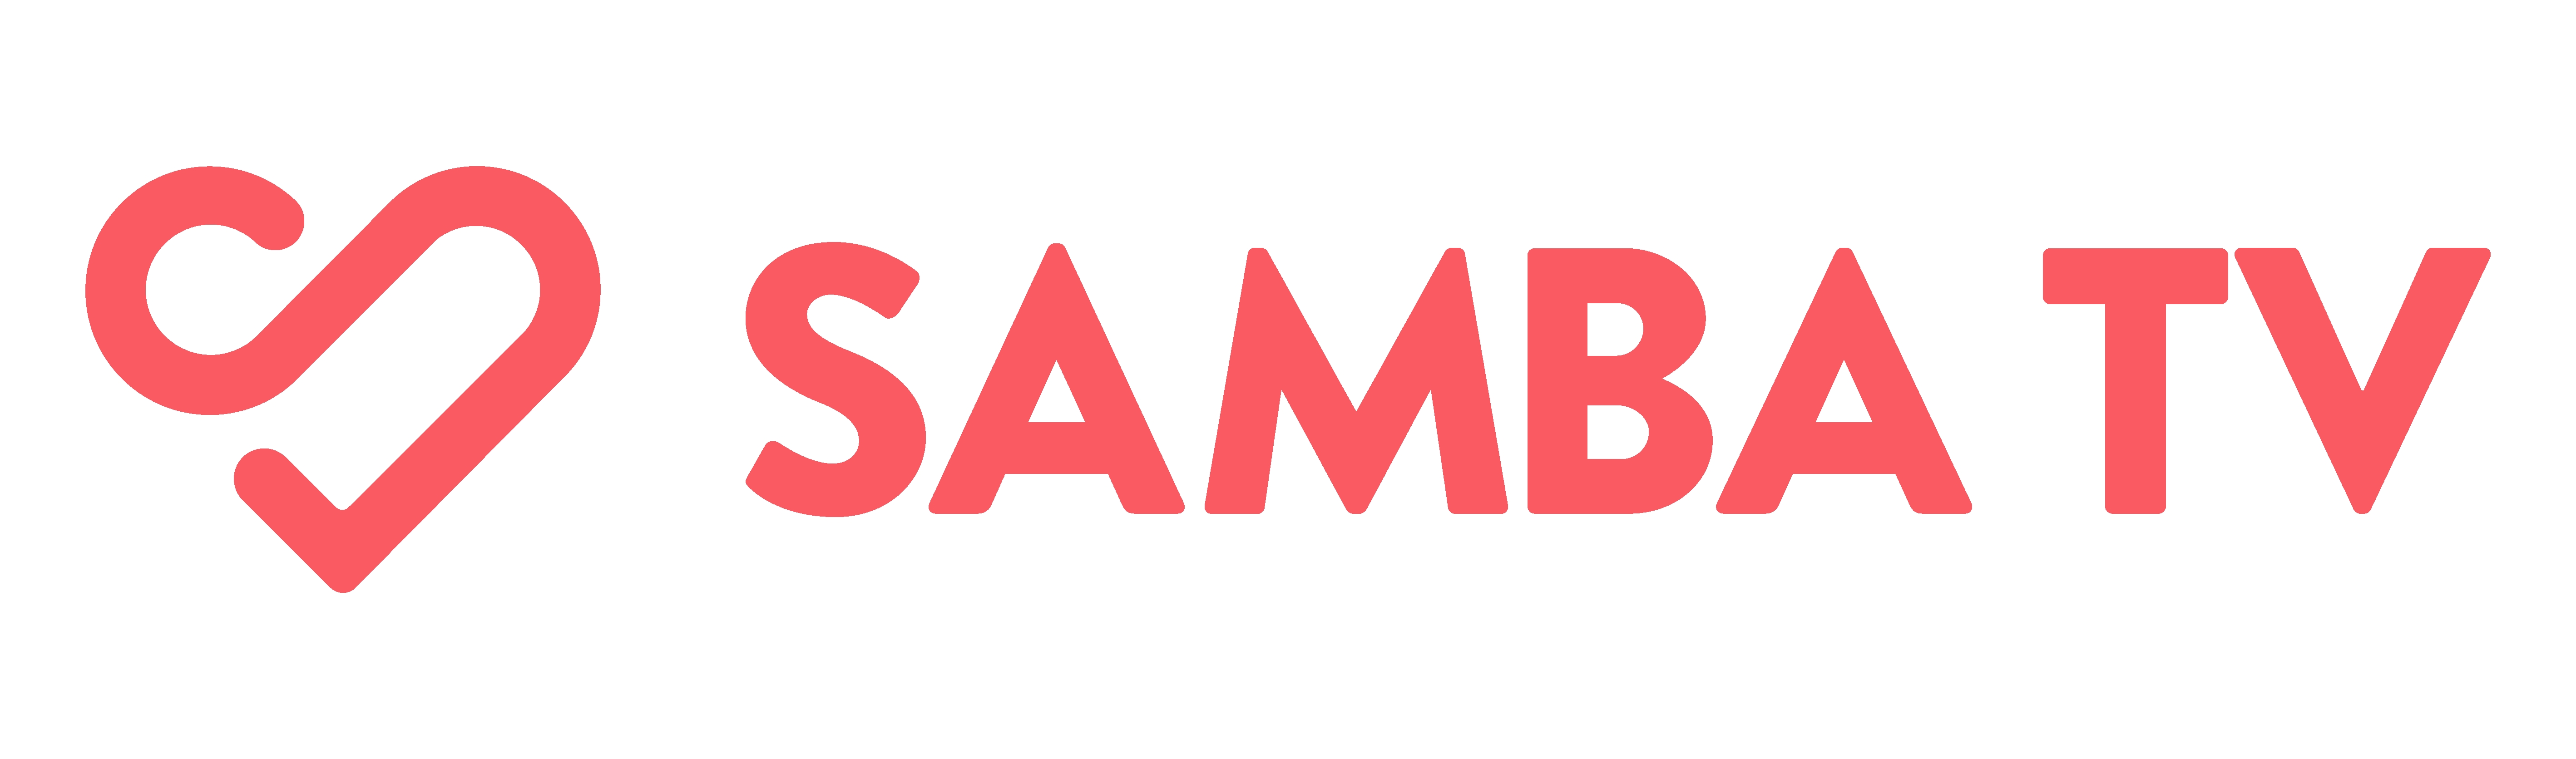 Samba TV - Logo.jpg